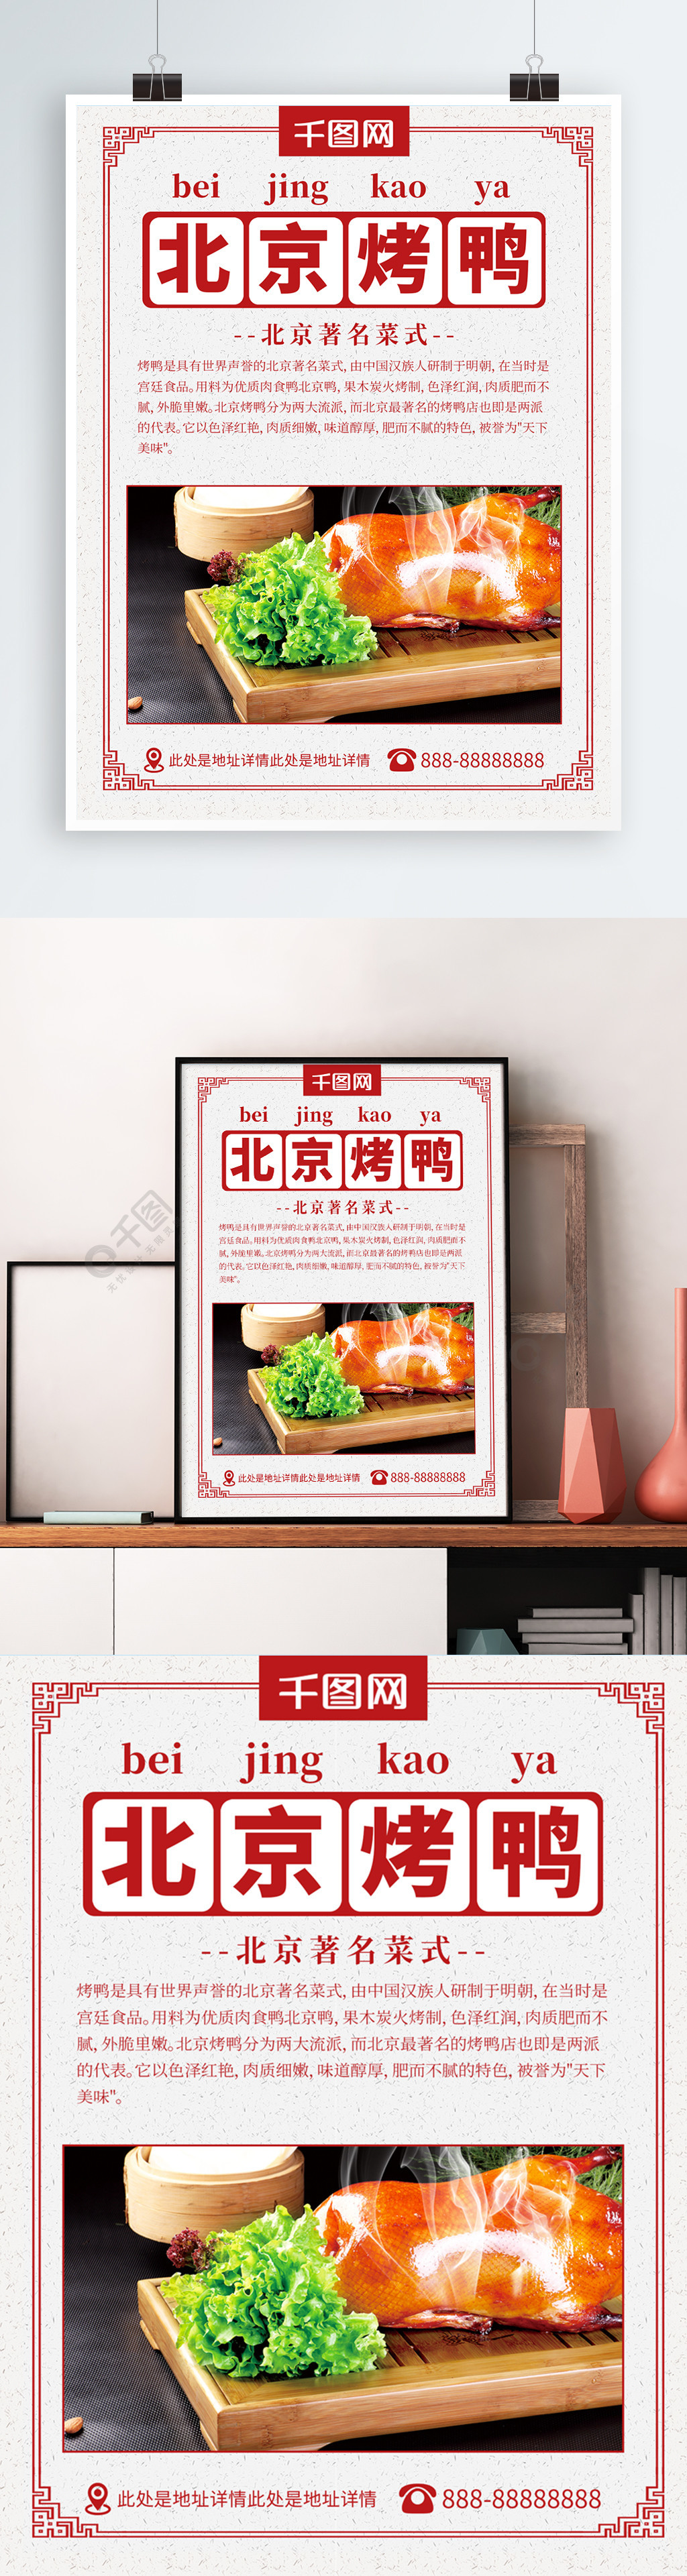 北京烤鸭宣传海报psd分层素材2年前发布